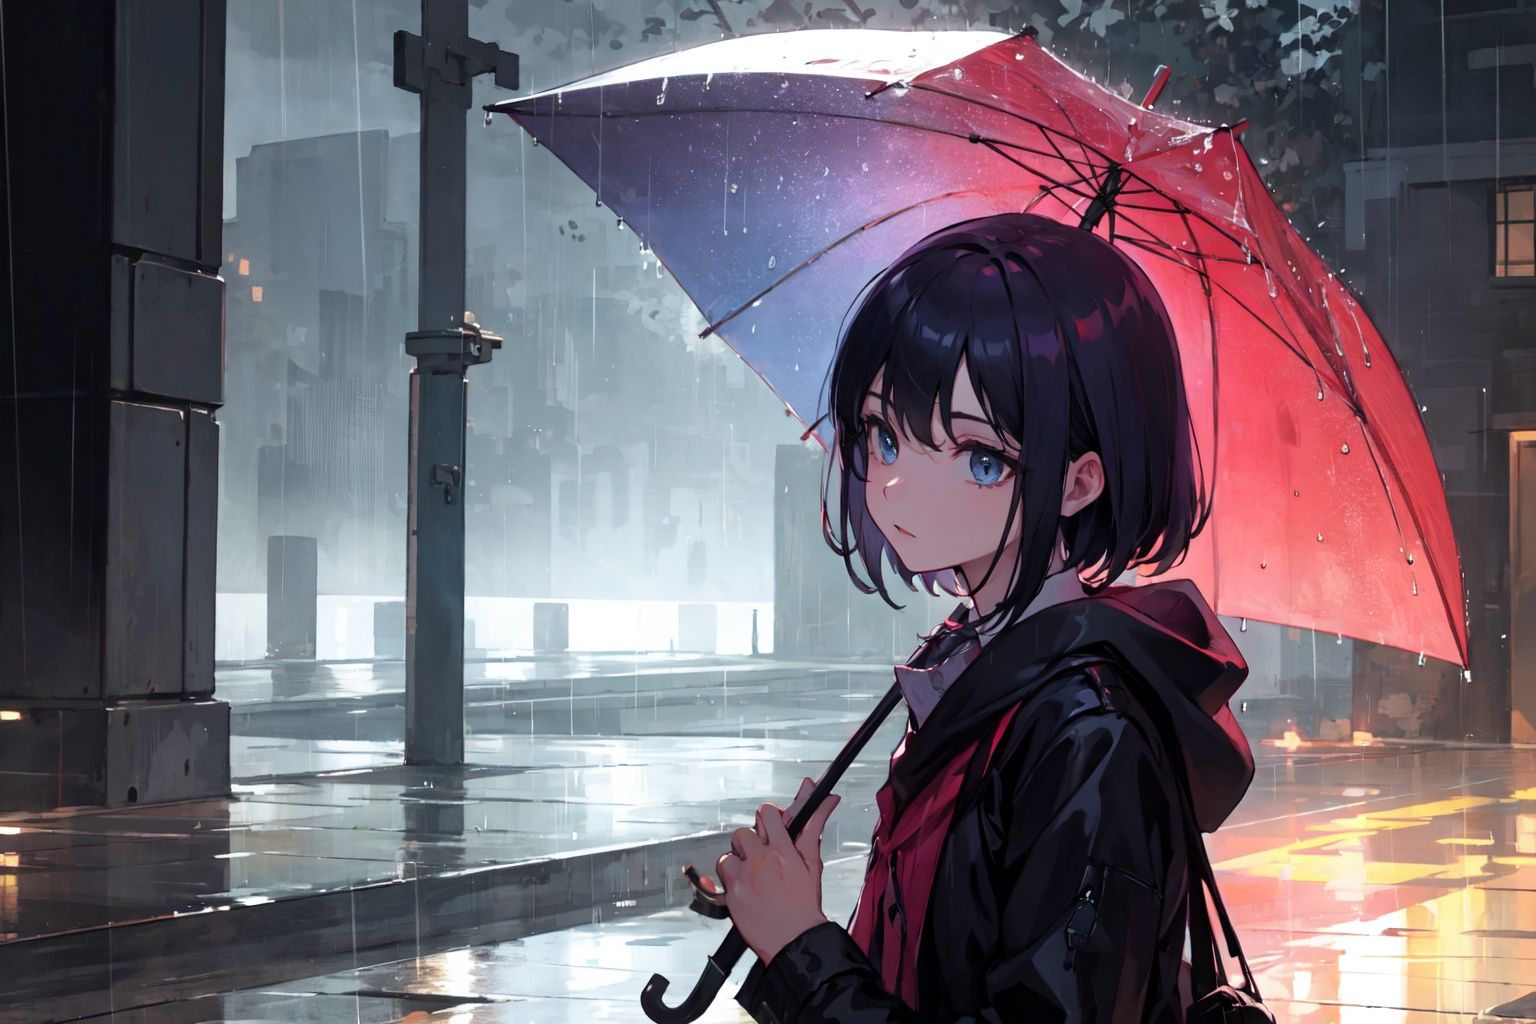 rain,holding umbrella,